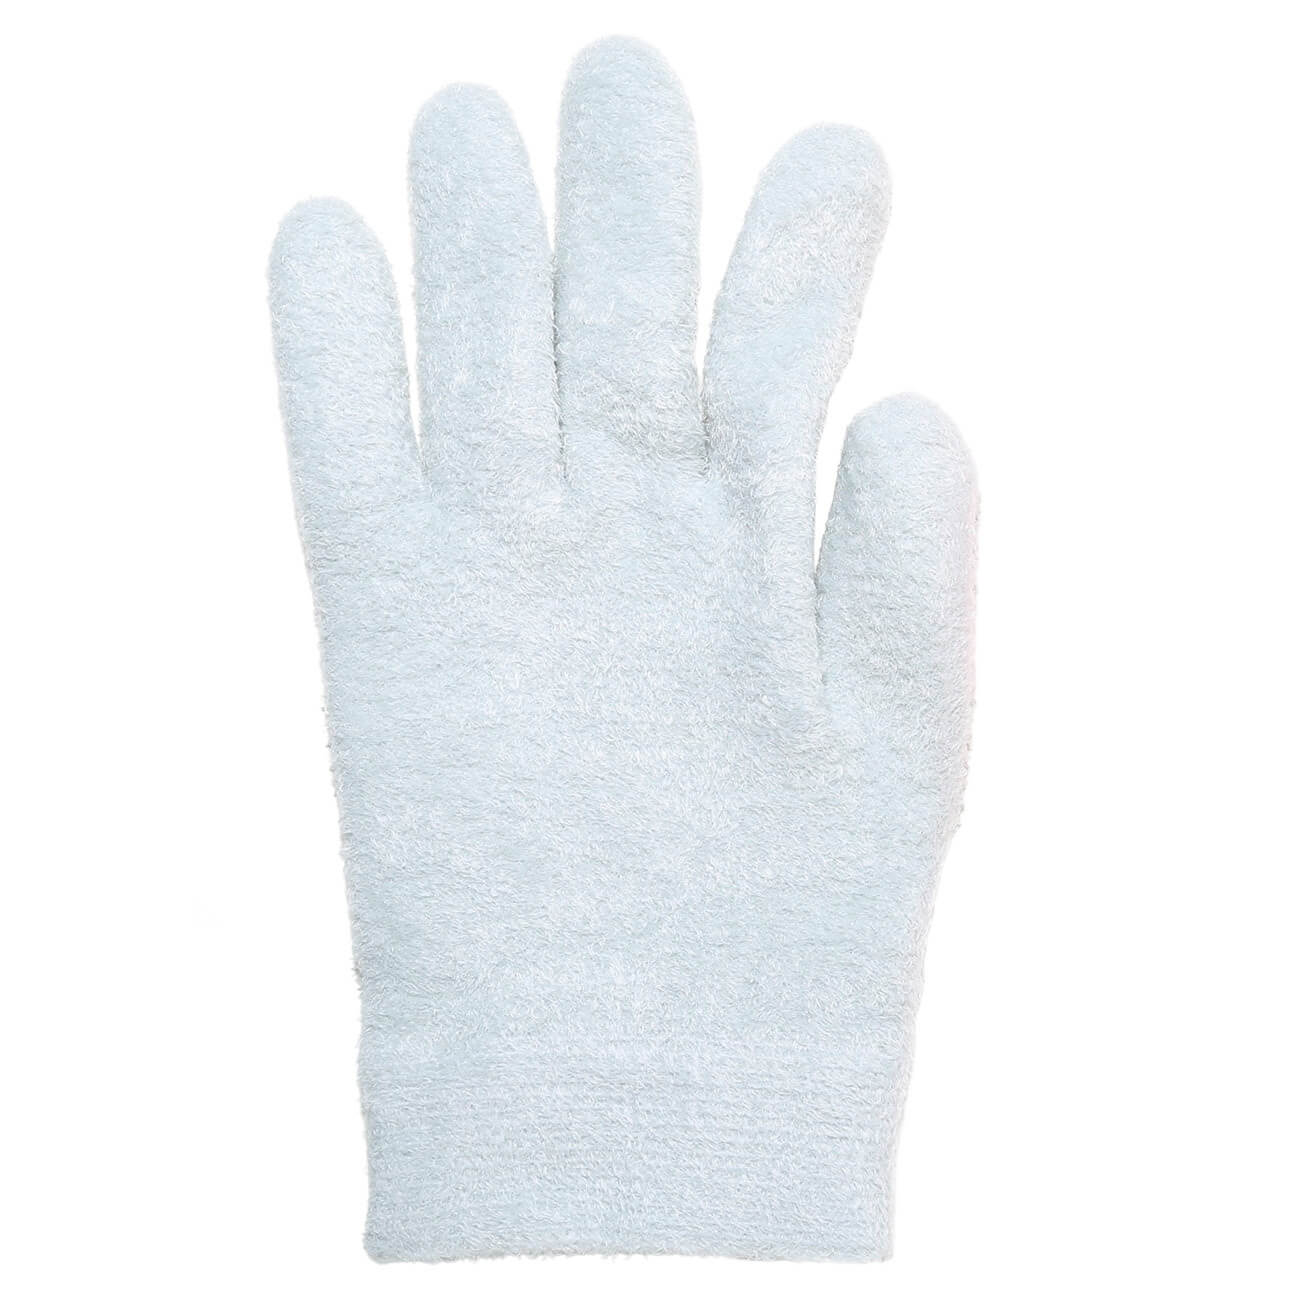 СПА-перчатки гелевые, 20 см, полиэстер, многоразовые, серые, Spa спа перчатки гелевые 20 см полиэстер многоразовые серые spa